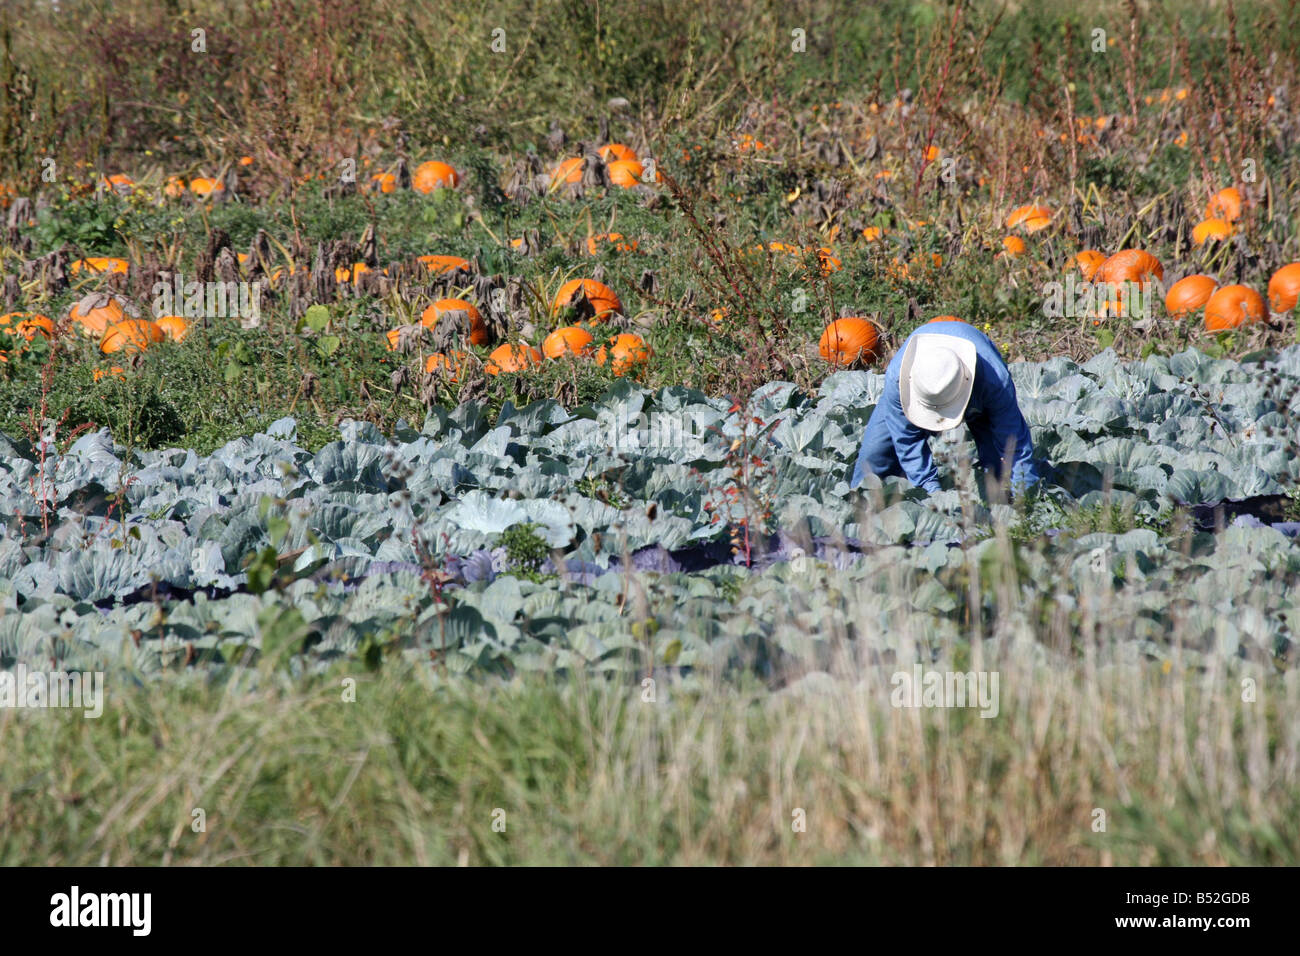 Ein Wanderarbeitnehmer Kommissionierung Ganzjahresproduktion während der Herbst-Erntezeit in Wisconsin Stockfoto